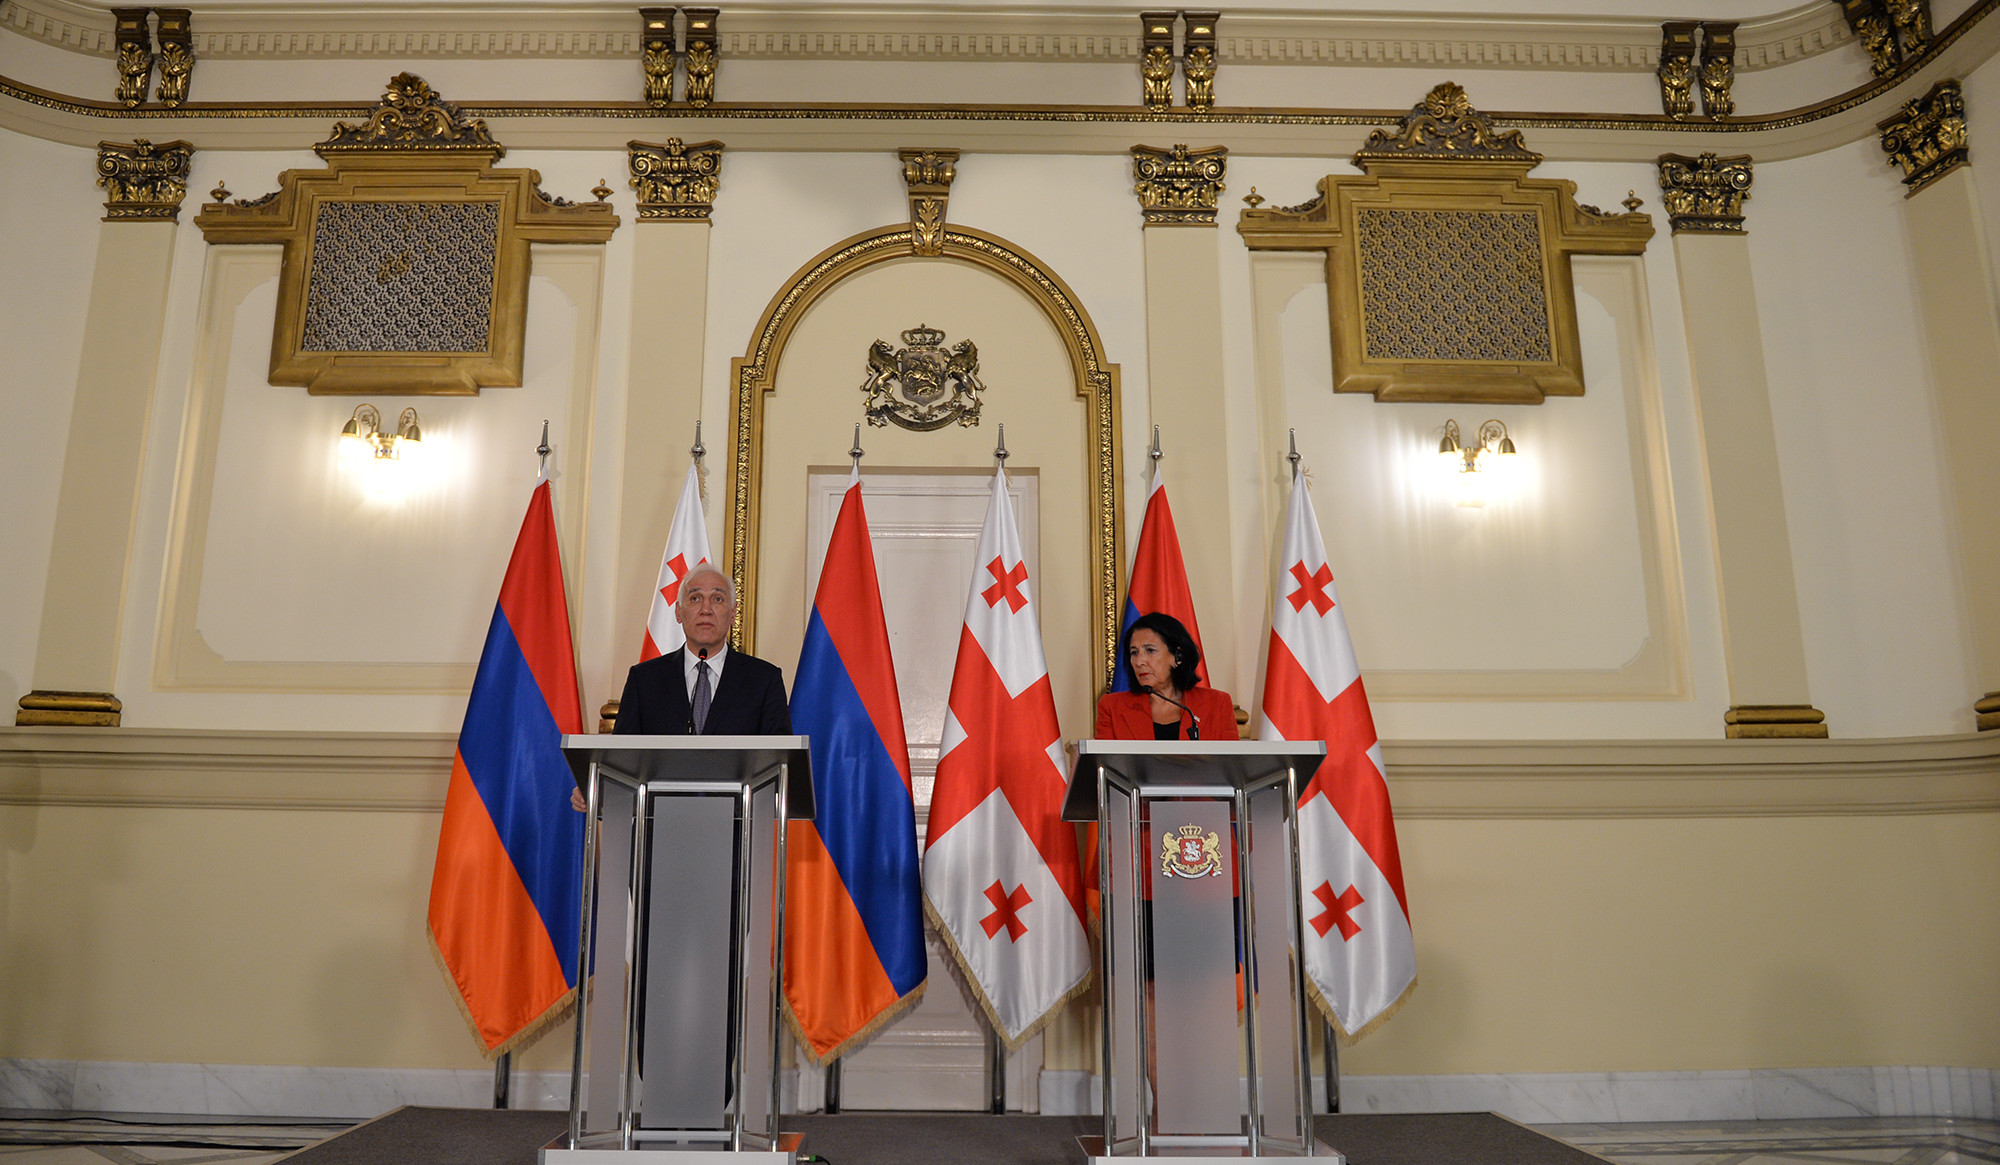 Հայաստանը մեծ կարևորություն է տալիս Վրաստանի հետ հարաբերությունների շարունակական զարգացմանն ու ամրապնդմանը. Վահագն Խաչատուրյան